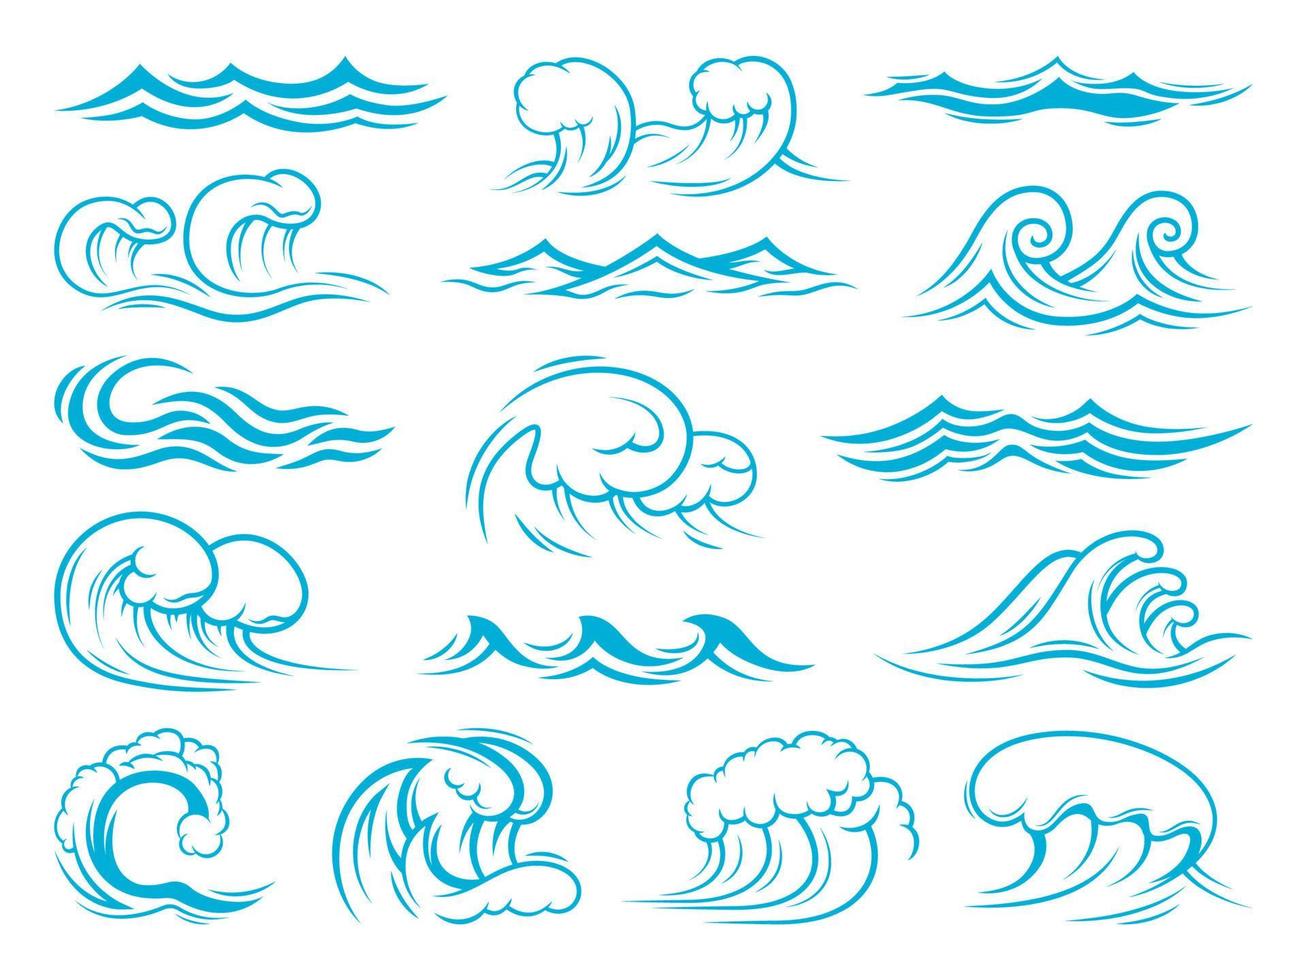 iconos de olas marinas y oceánicas, tsunami, conjunto de olas de surf vector